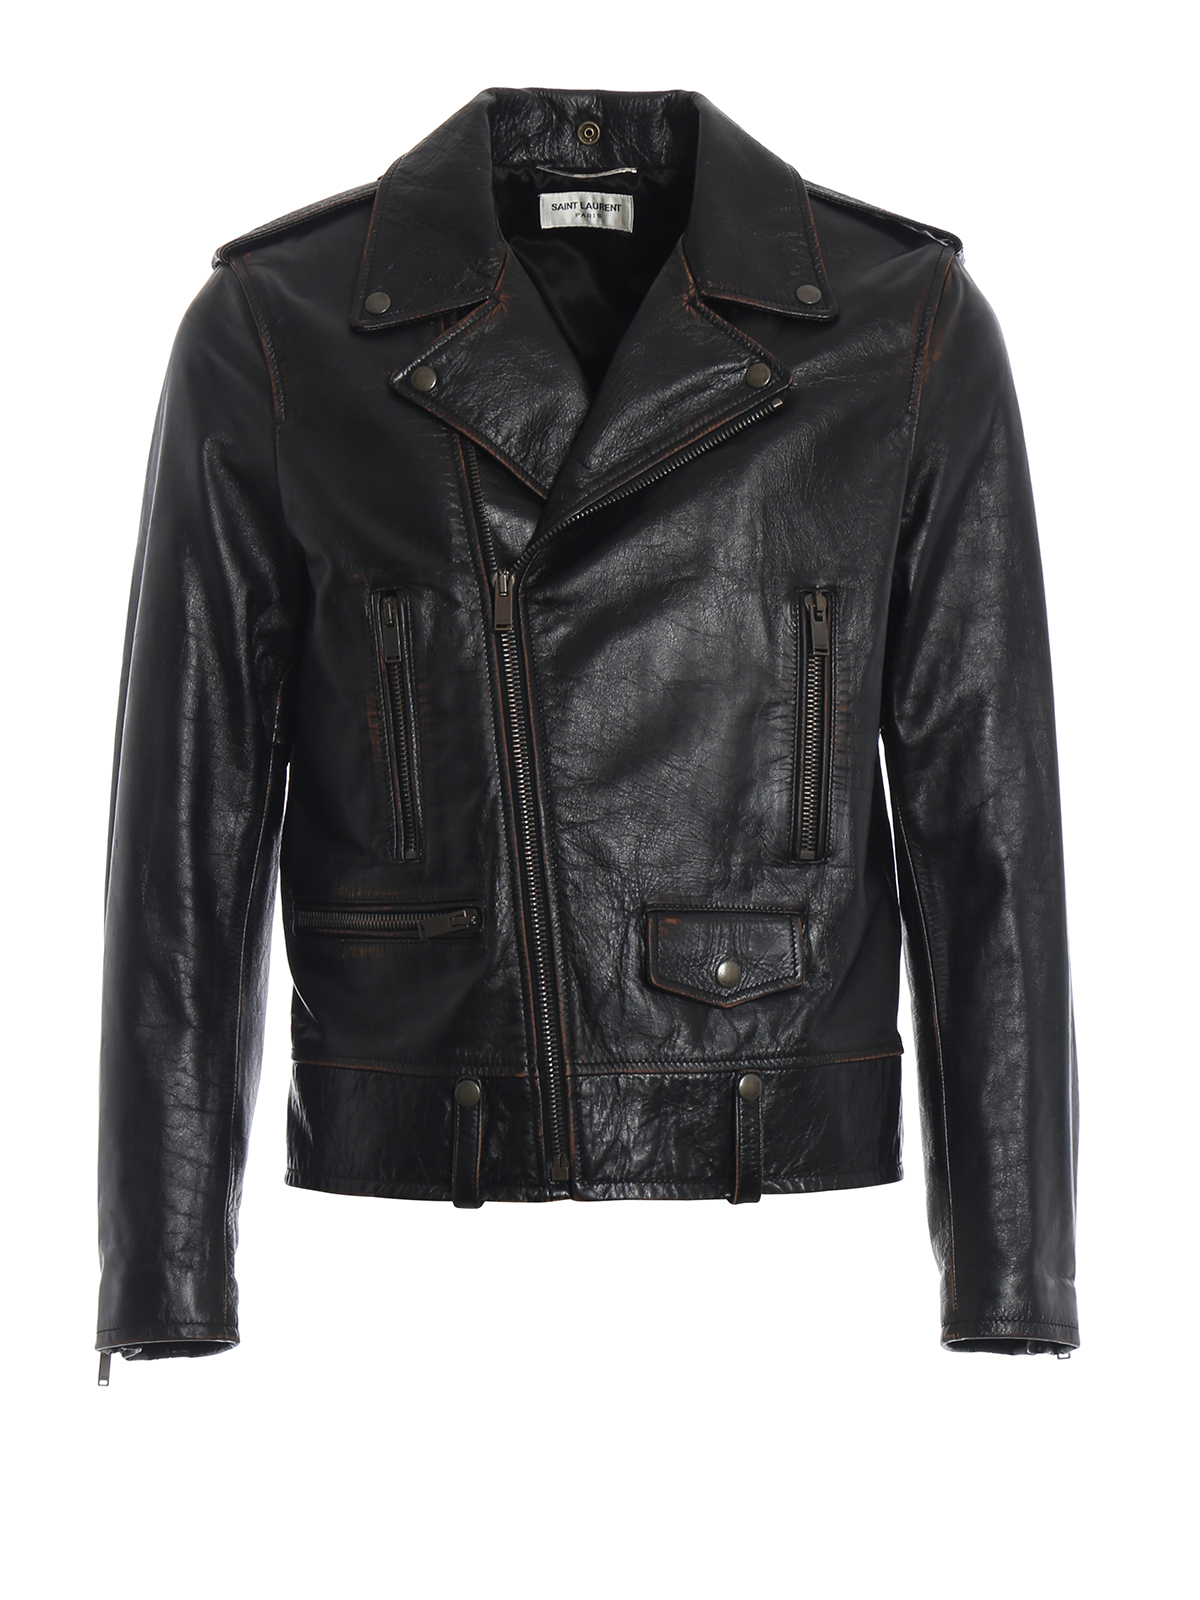 Leather jacket Saint Laurent - 1971 print used leather biker